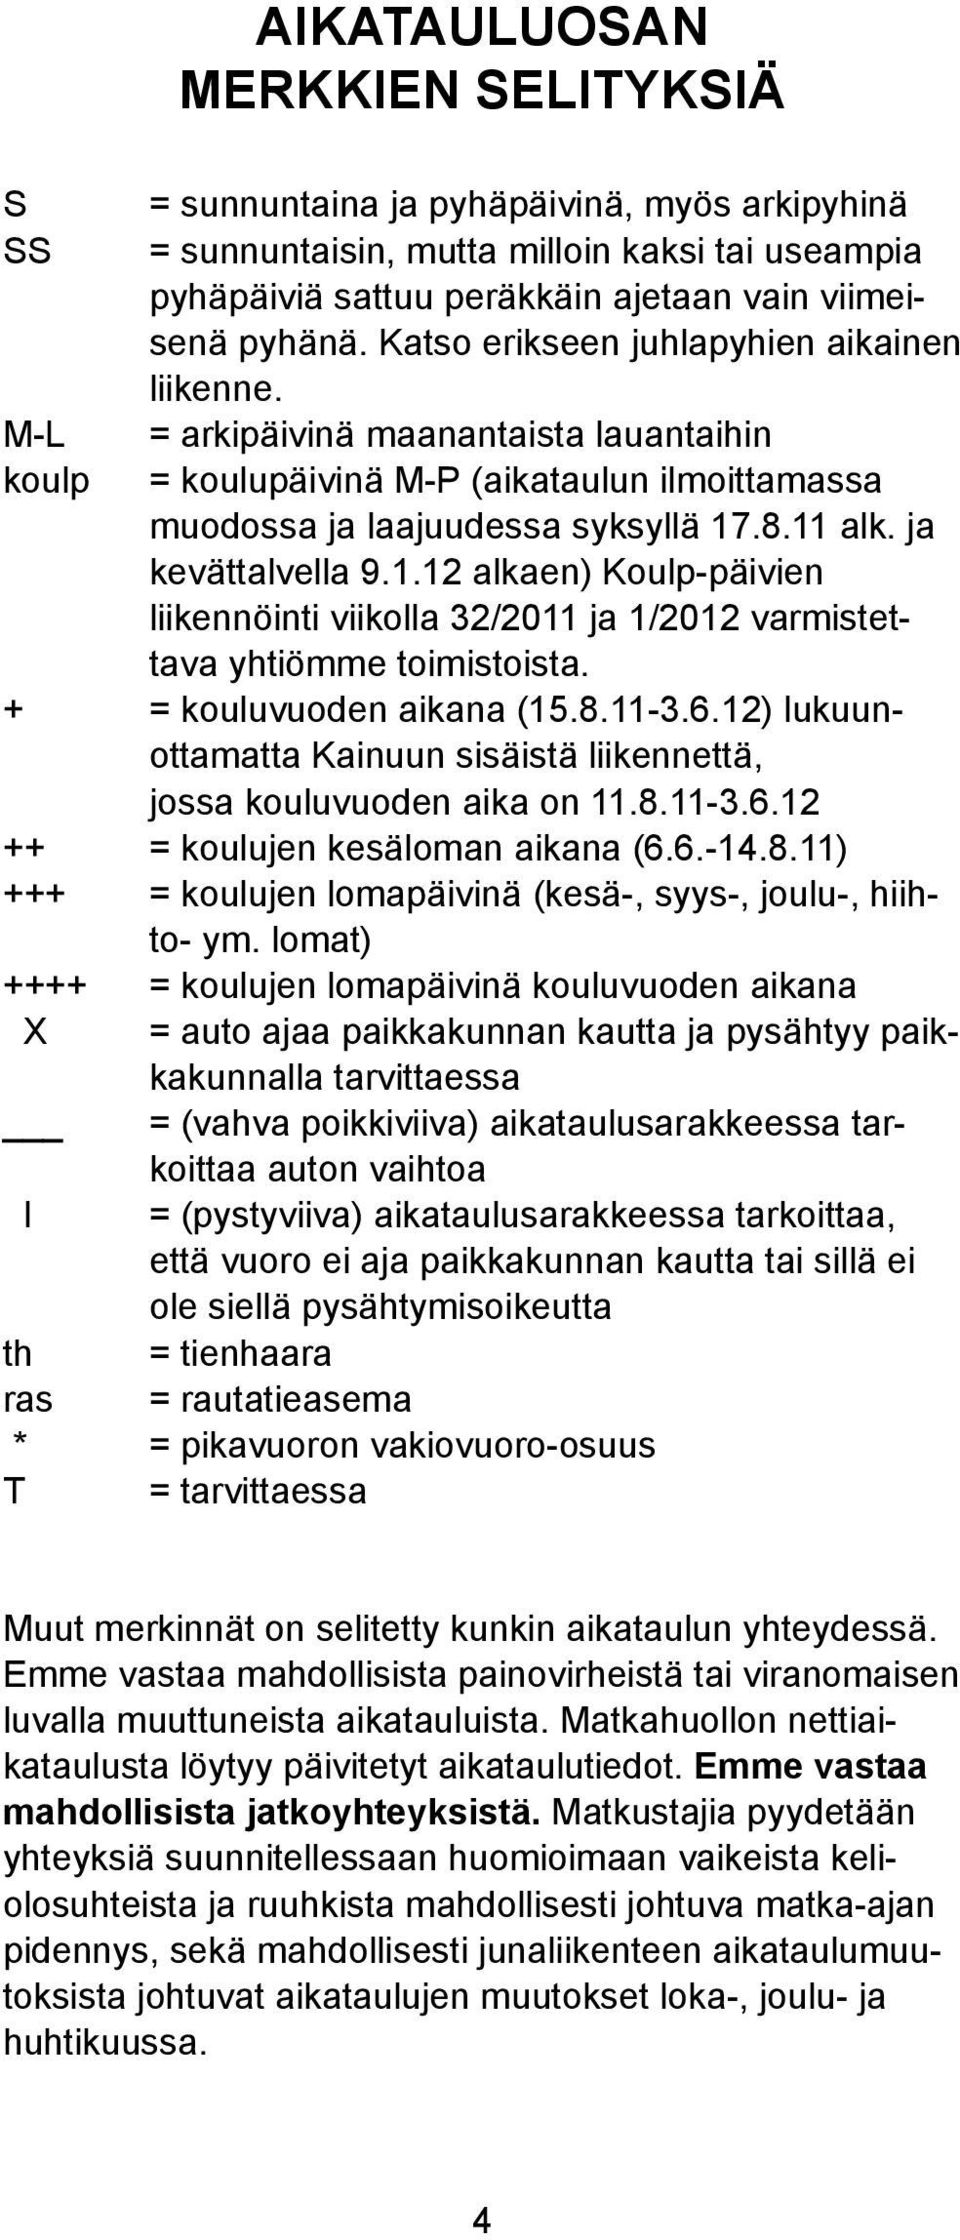 .8.11 ak. ja kevättavea 9.1.12 akaen) Koup-päivien iikennöinti viikoa 32/2011 ja 1/2012 varmistettava yhtiömme toimistoista. + = kouuvuoden aikana (15.8.11-3.6.